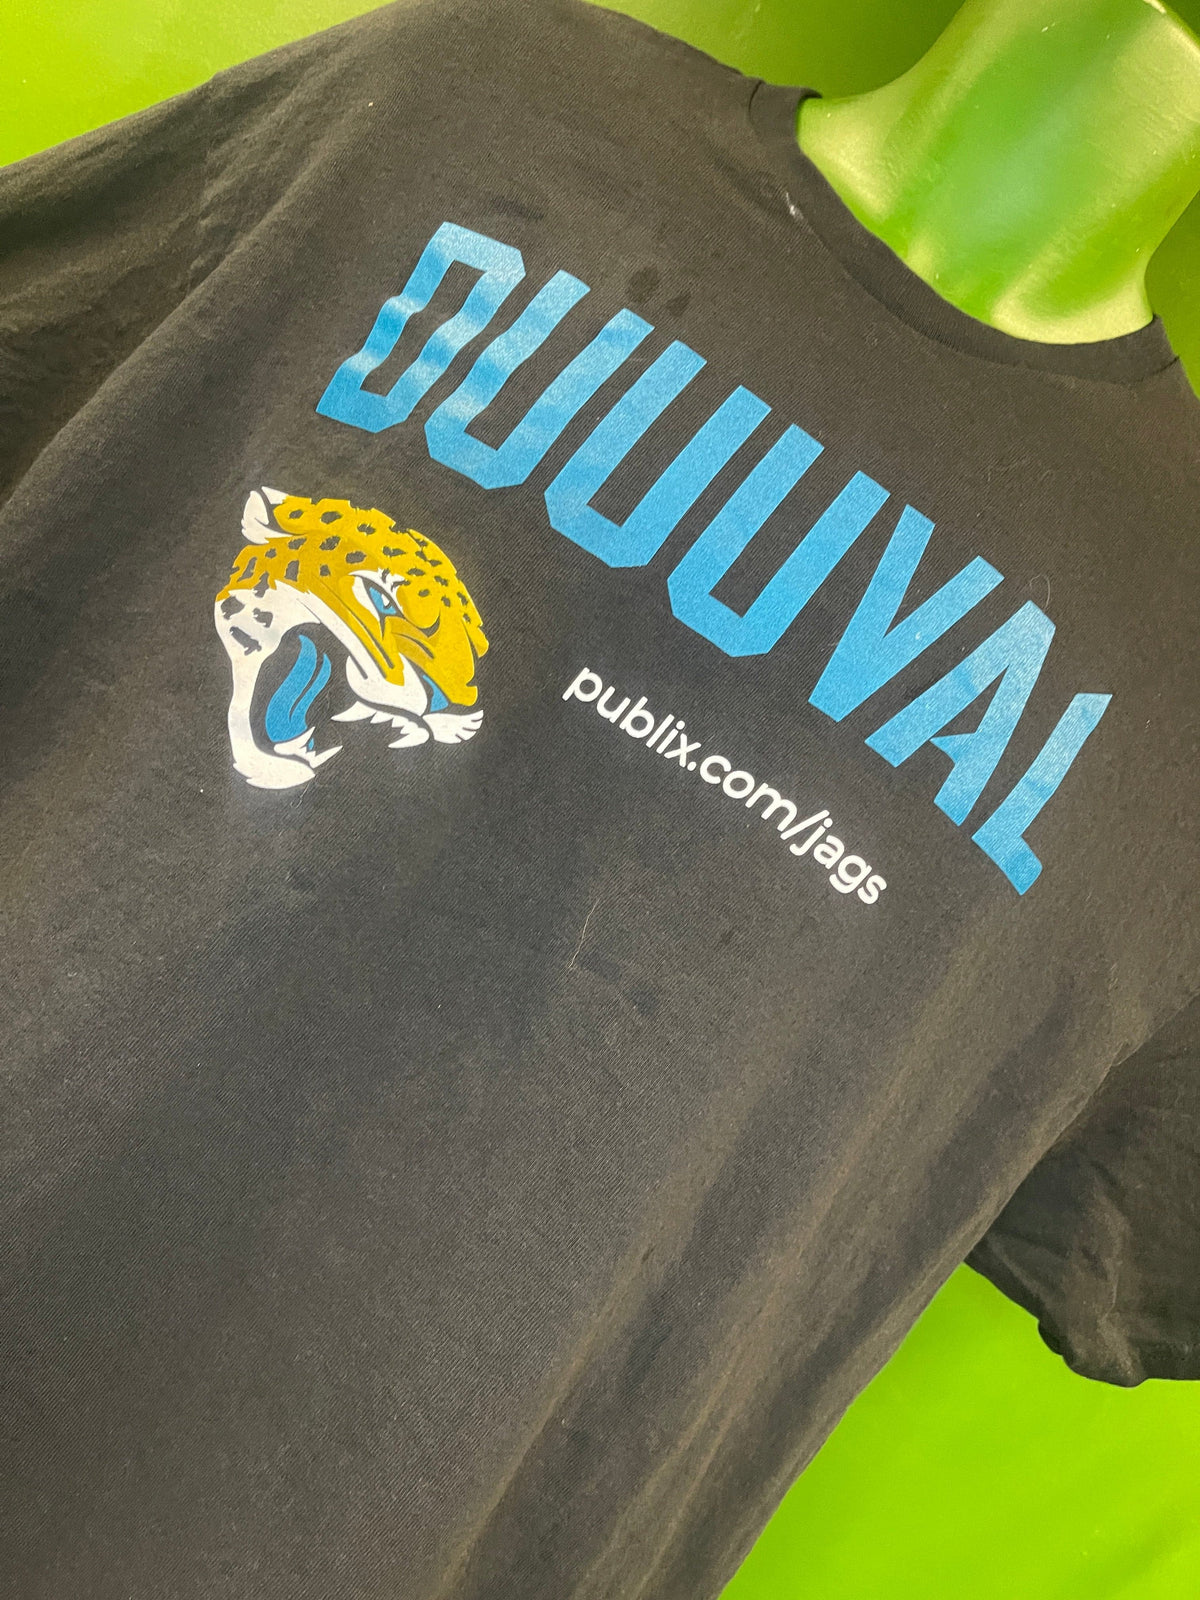 NFL Jacksonville Jaguars Publix T-Shirt Men's X-Large